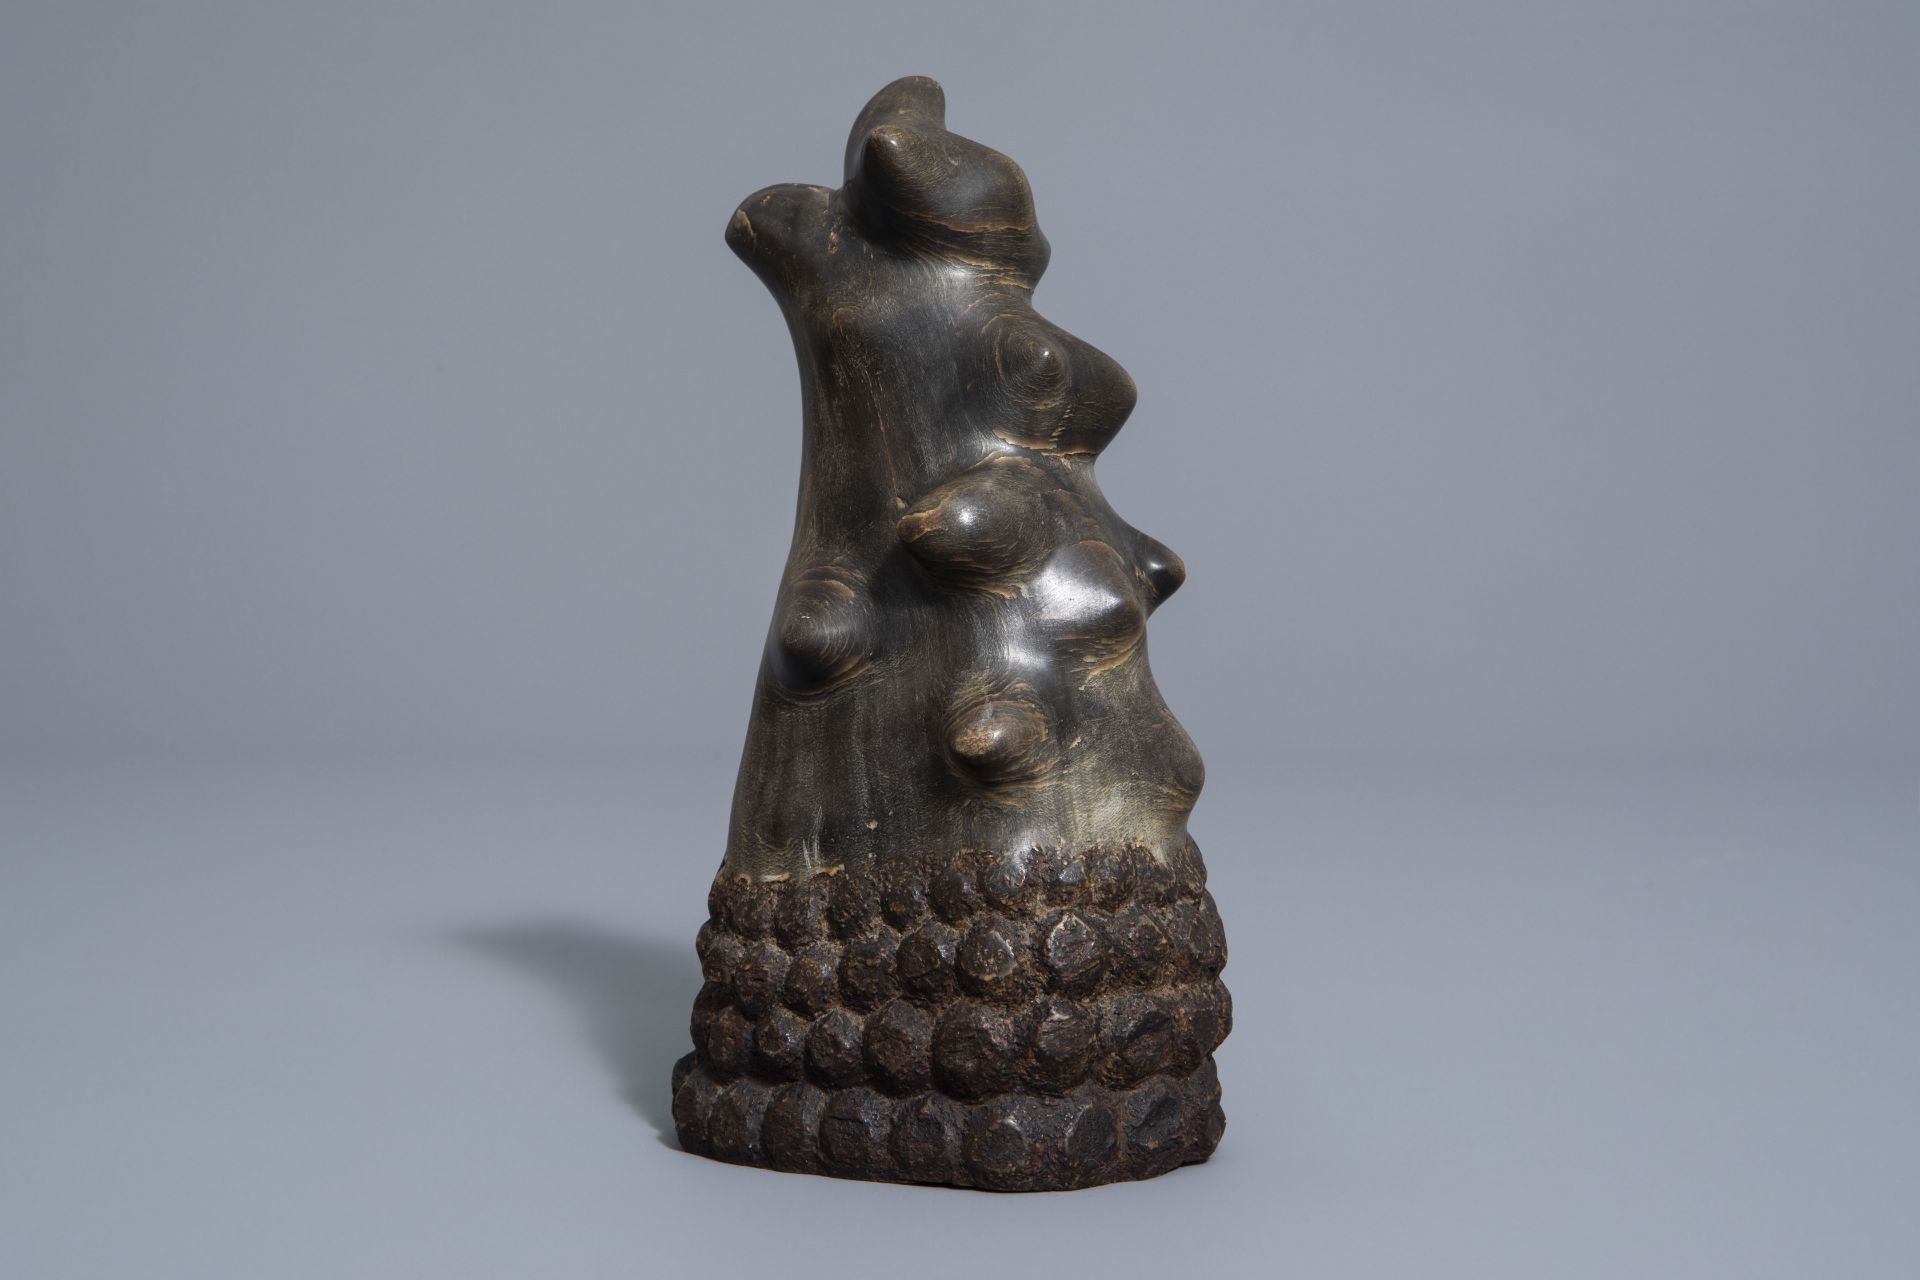 A Sng t giac or scholar's object in polished rhinoceros horn, Vietnam, 19th/20th C. - Image 2 of 7